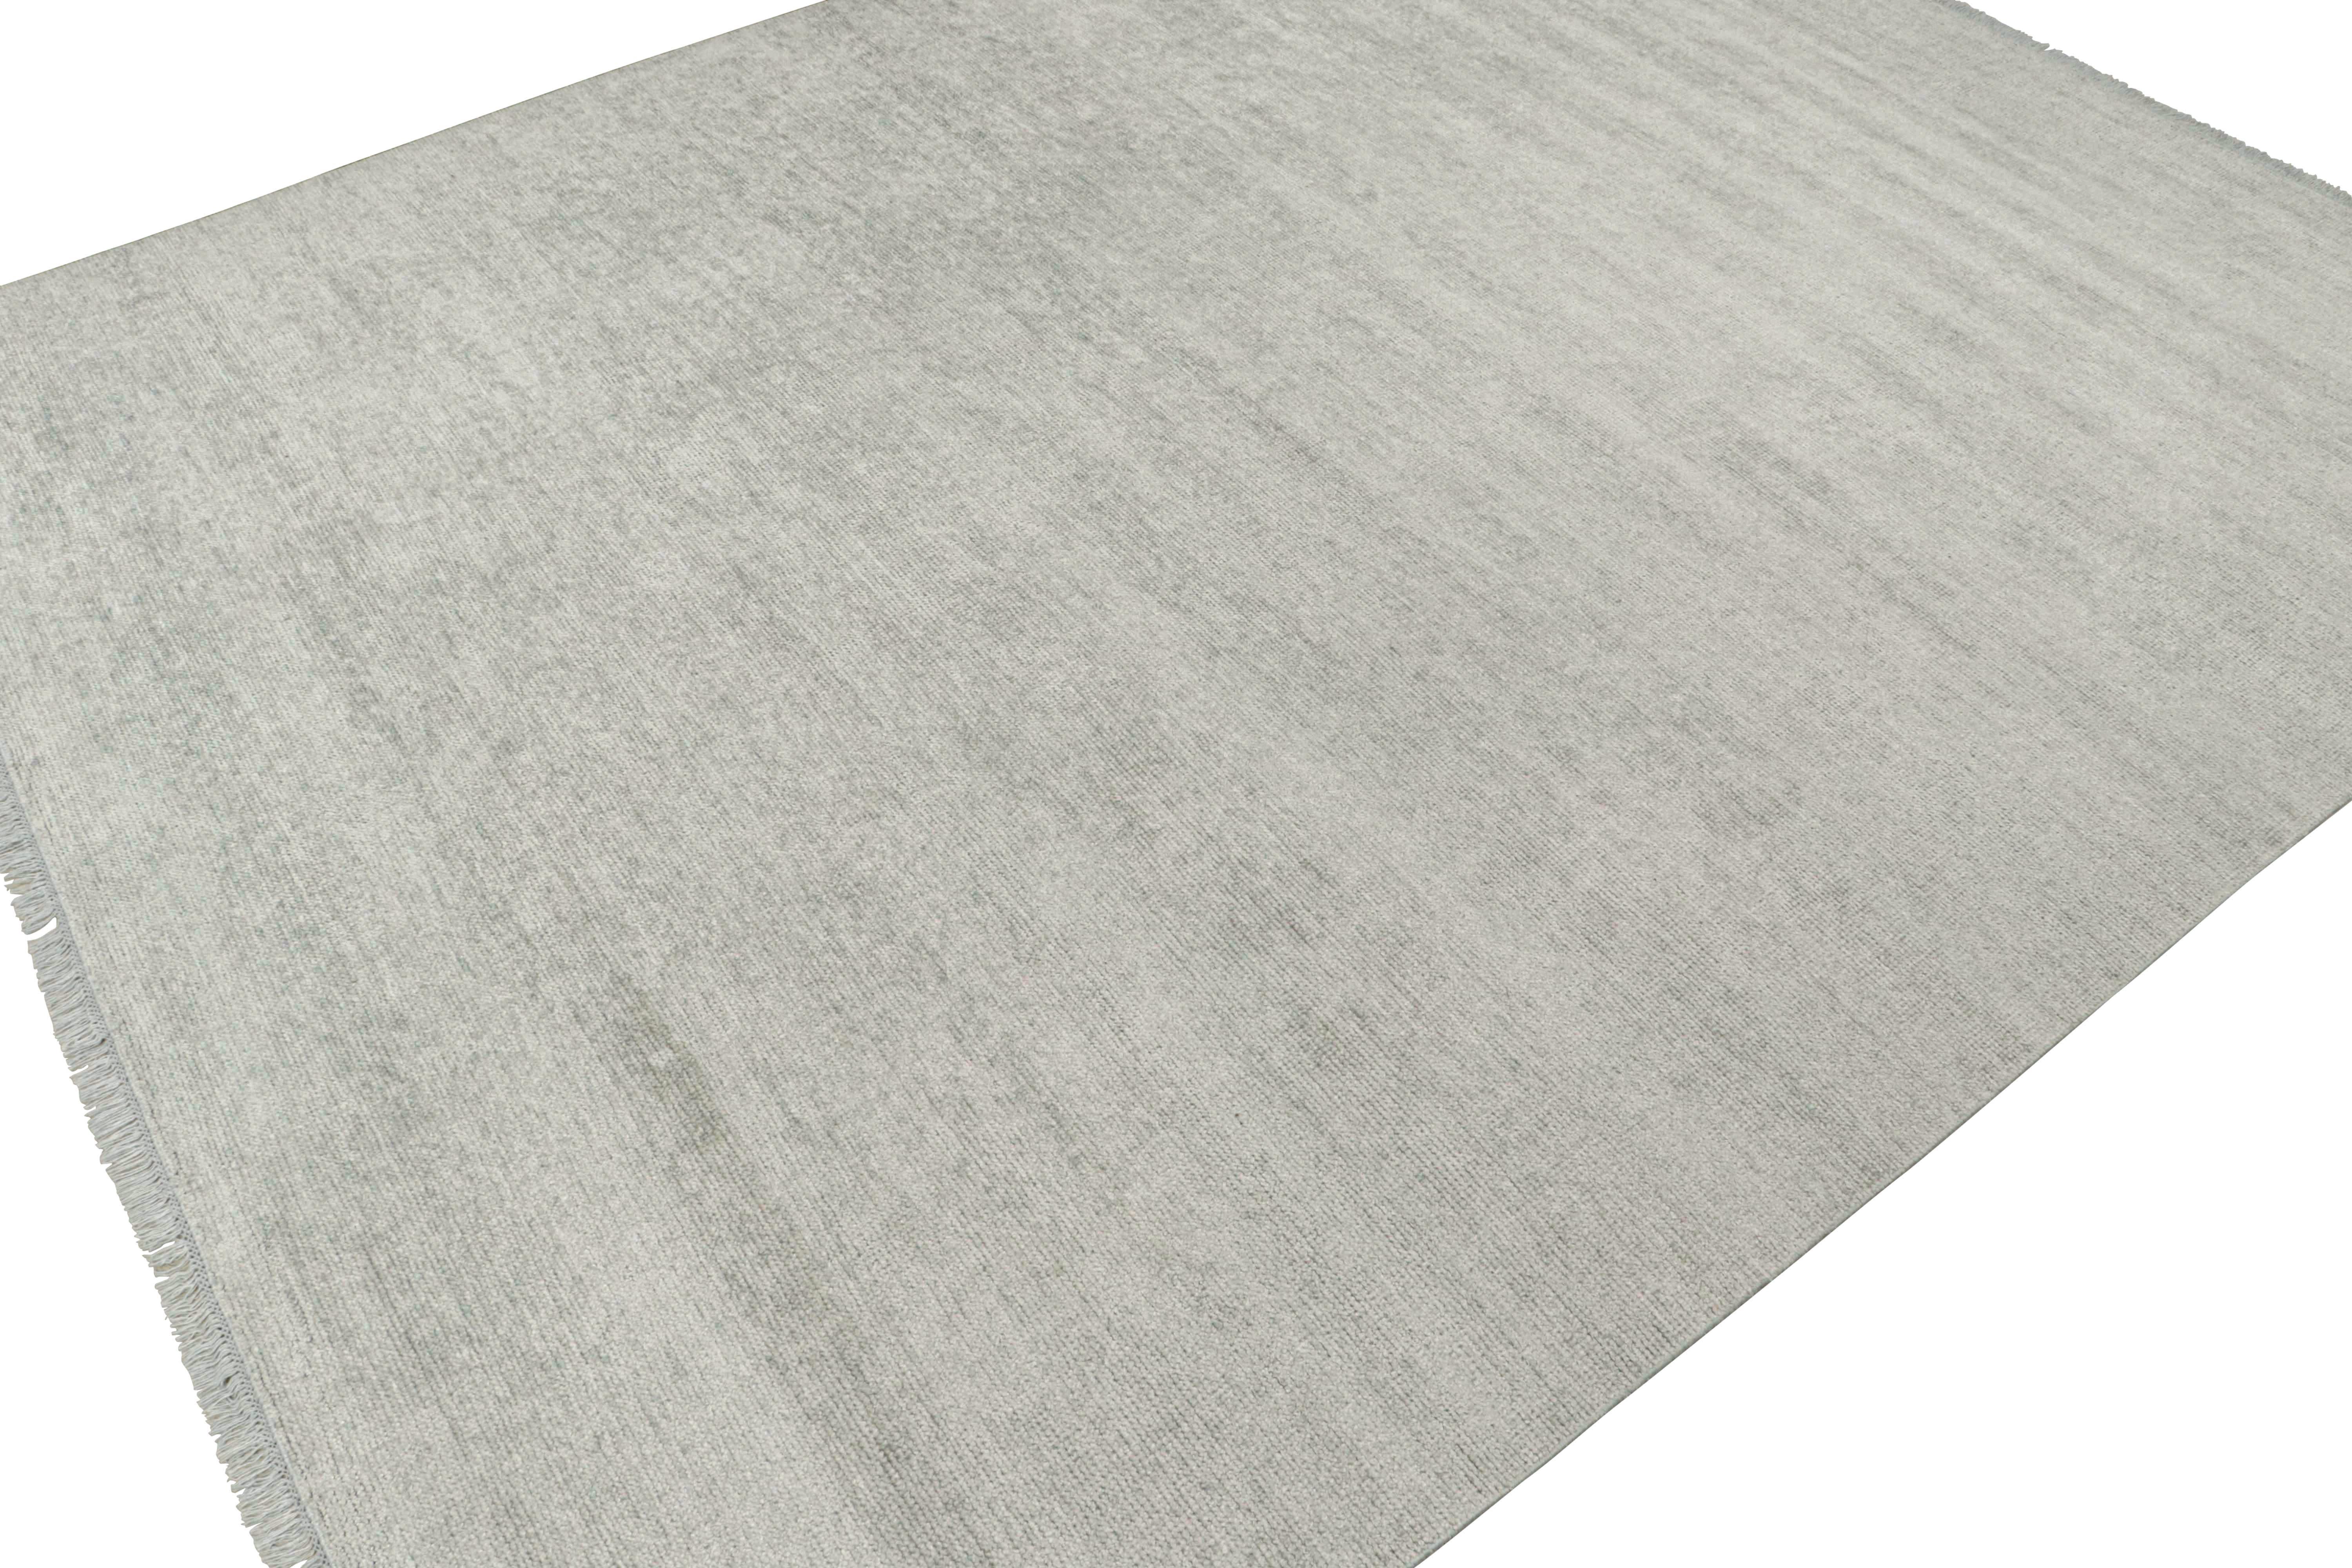 Moderner Teppich von Rug & Kilim in massivem silber-grauem Ton-in-Ton-Streifendesign (Handgeknüpft) im Angebot